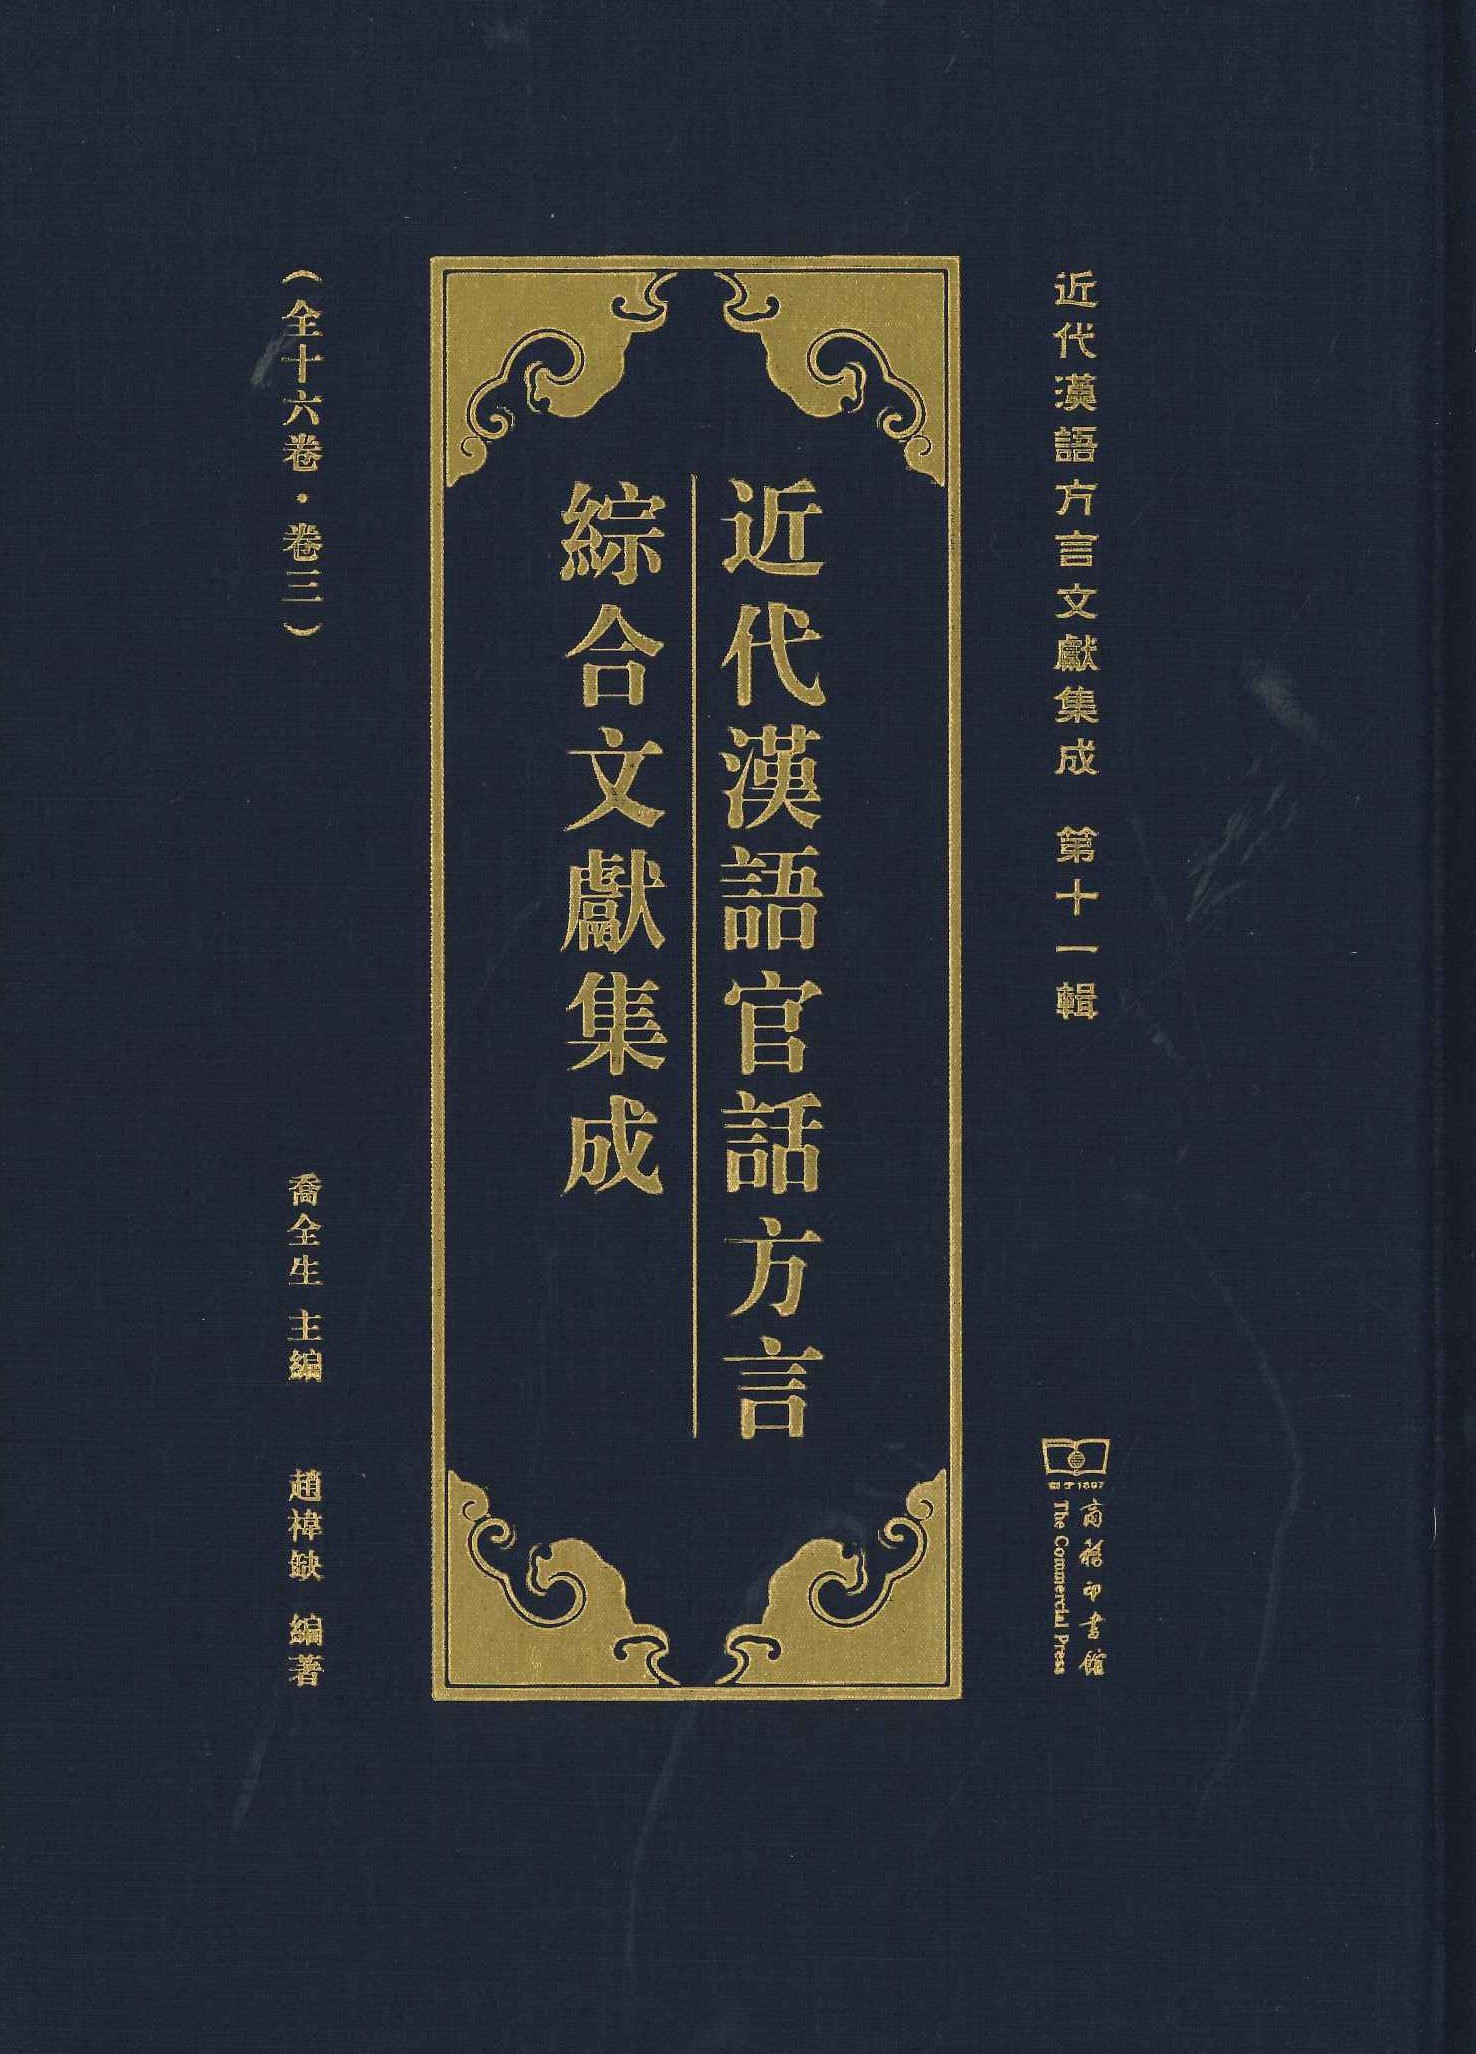 近代汉语官话方言综合文献集成(全16)(近代汉语方言集成第12种)